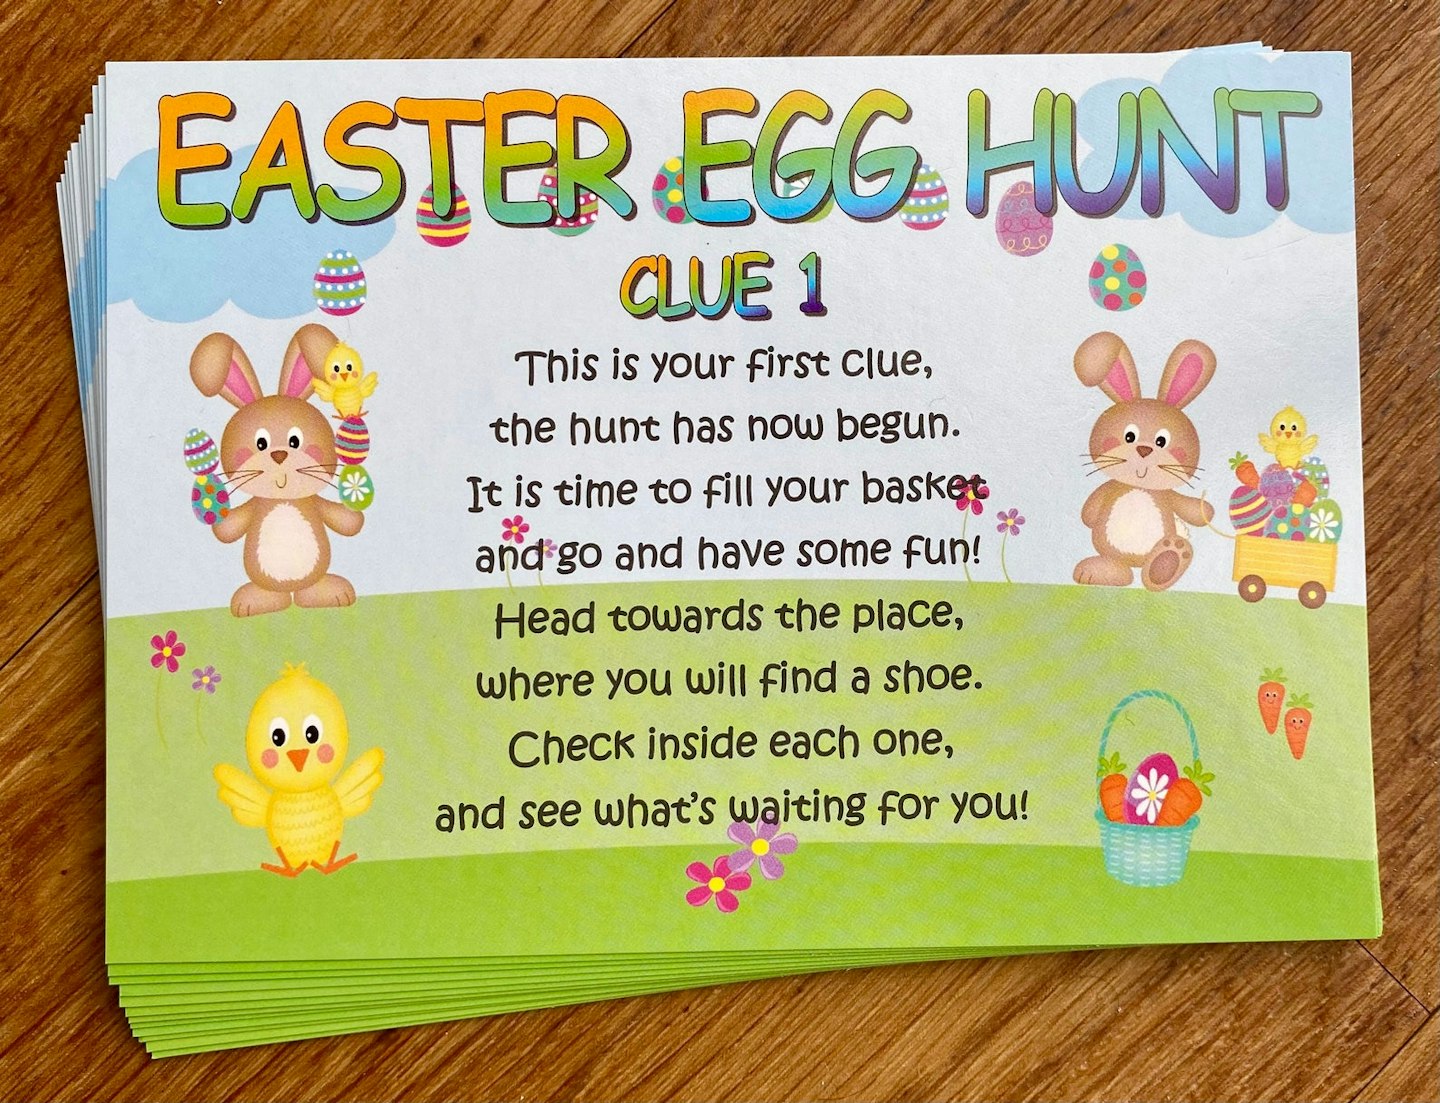 Easter Egg Hunt Indoor Clues